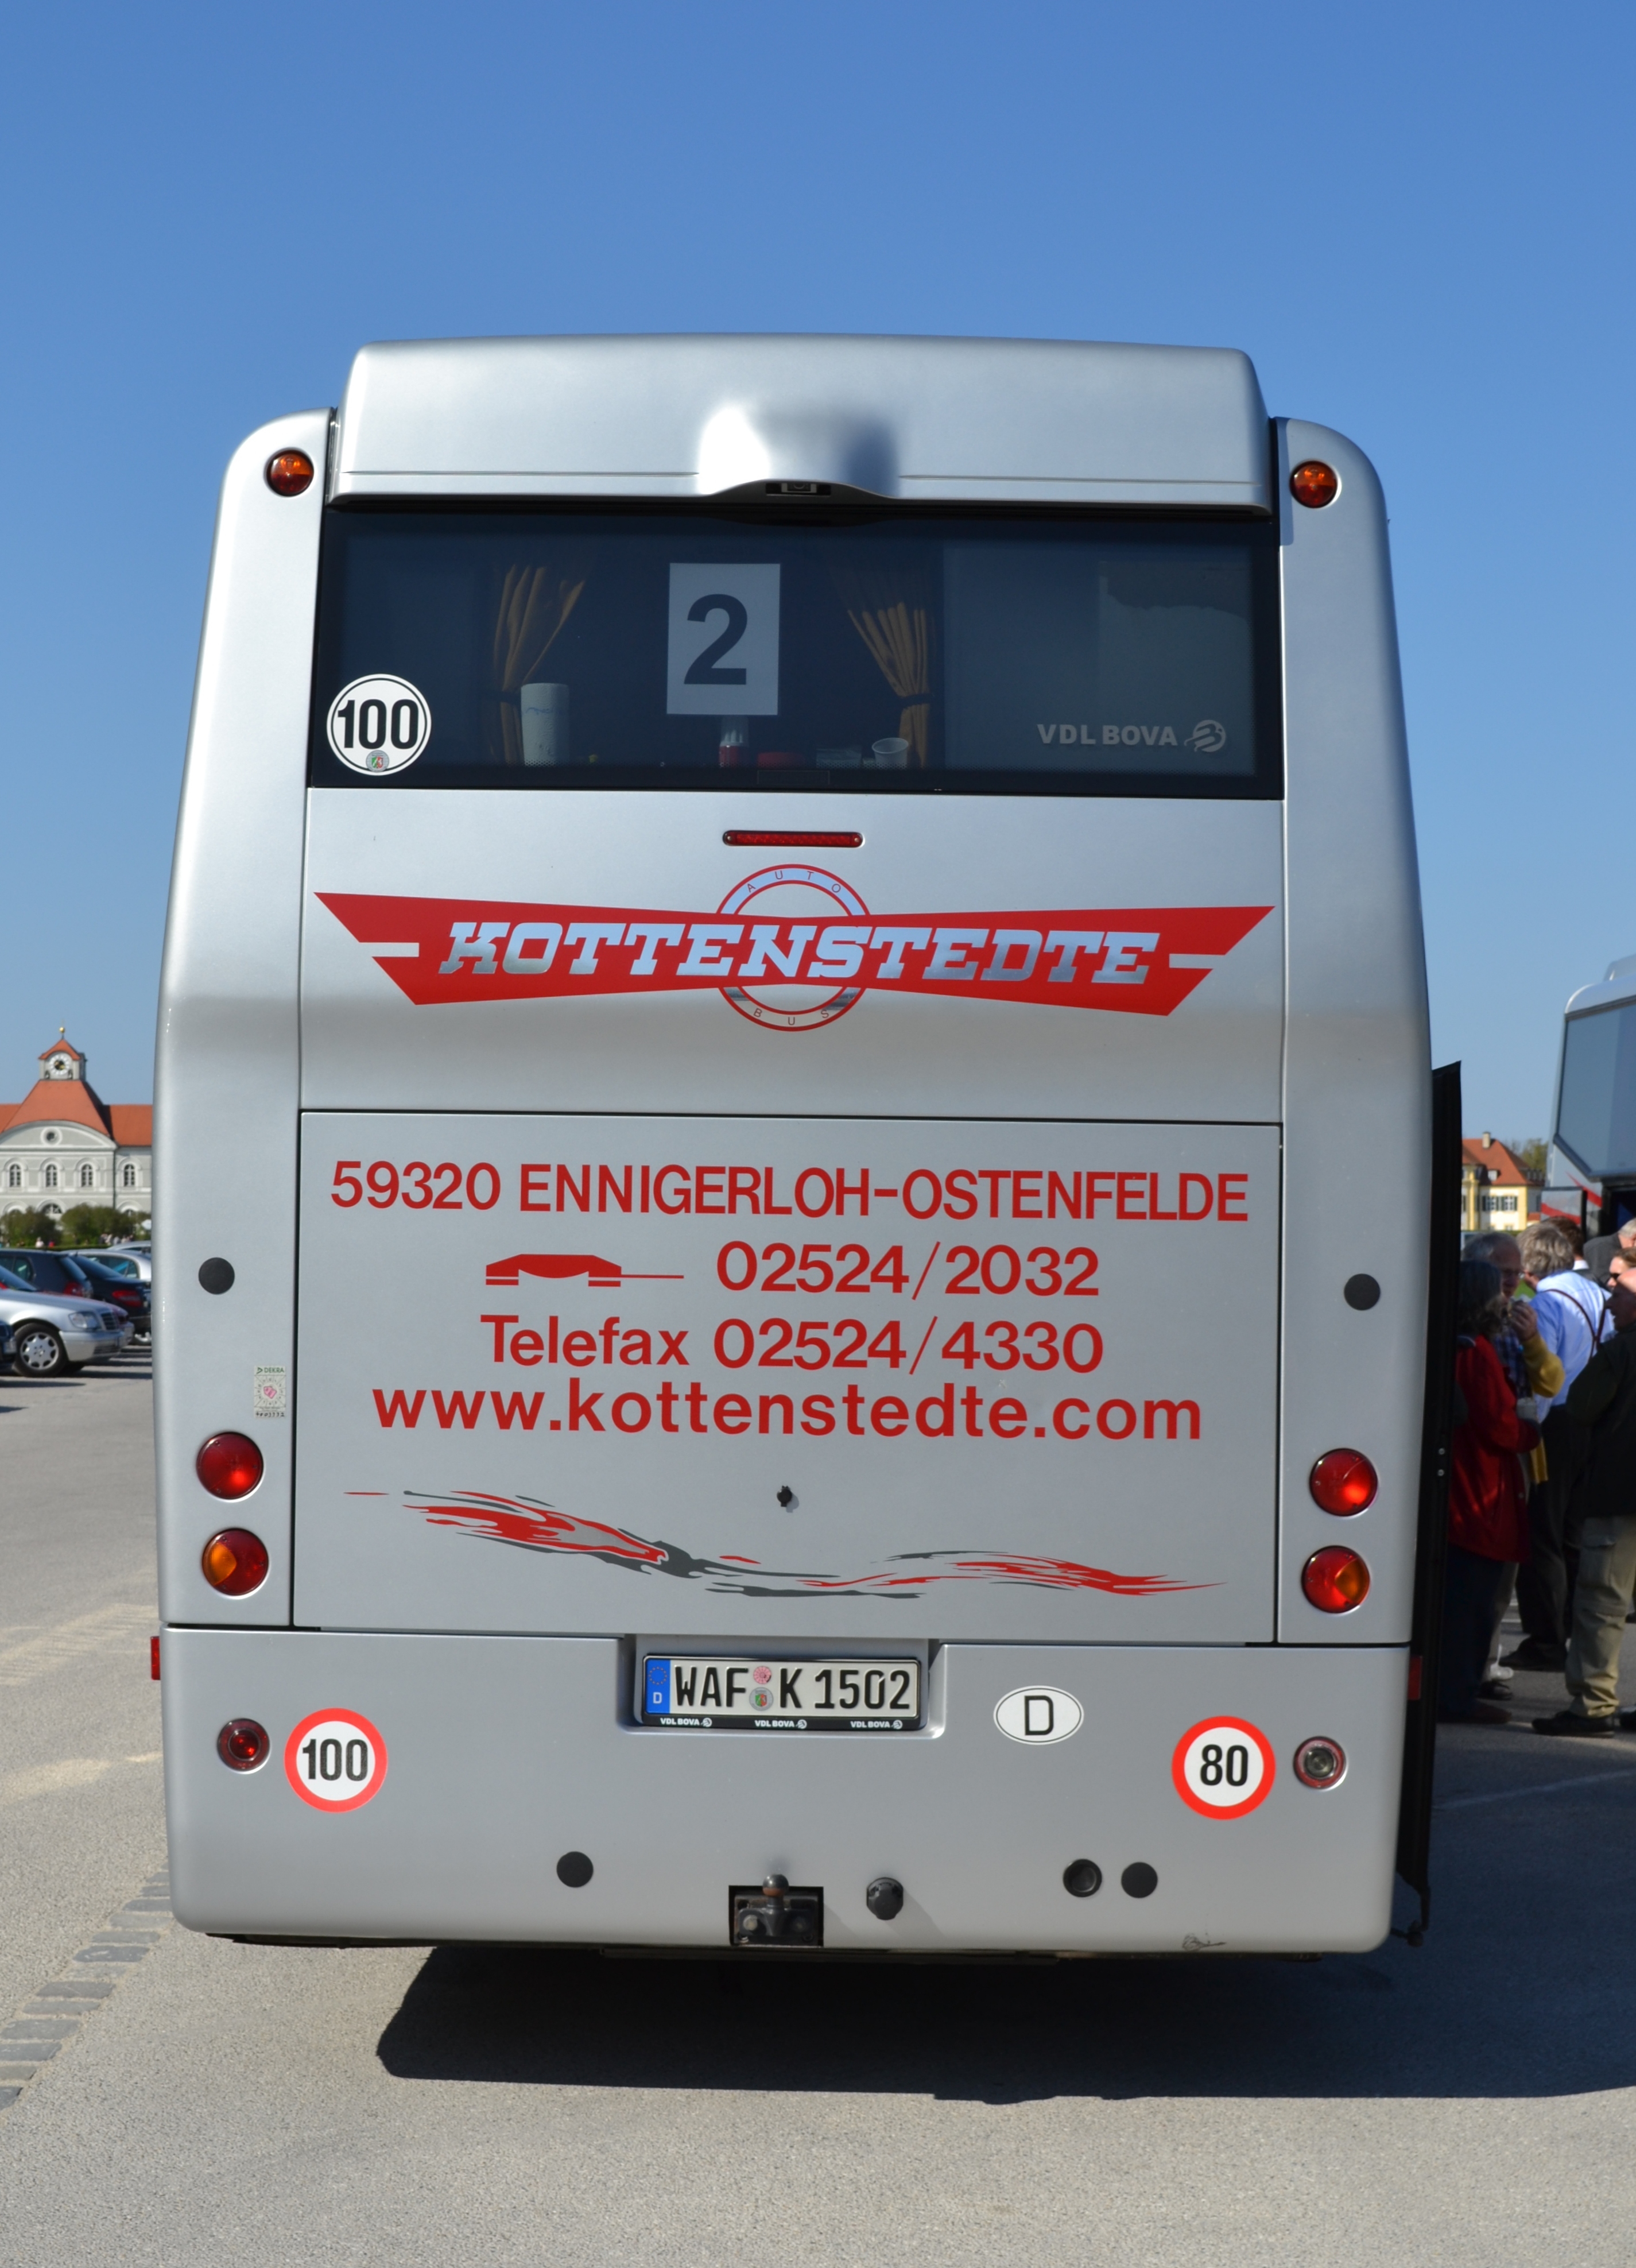 File:VDL Bova bus in Munich.JPG - Wikimedia Commons